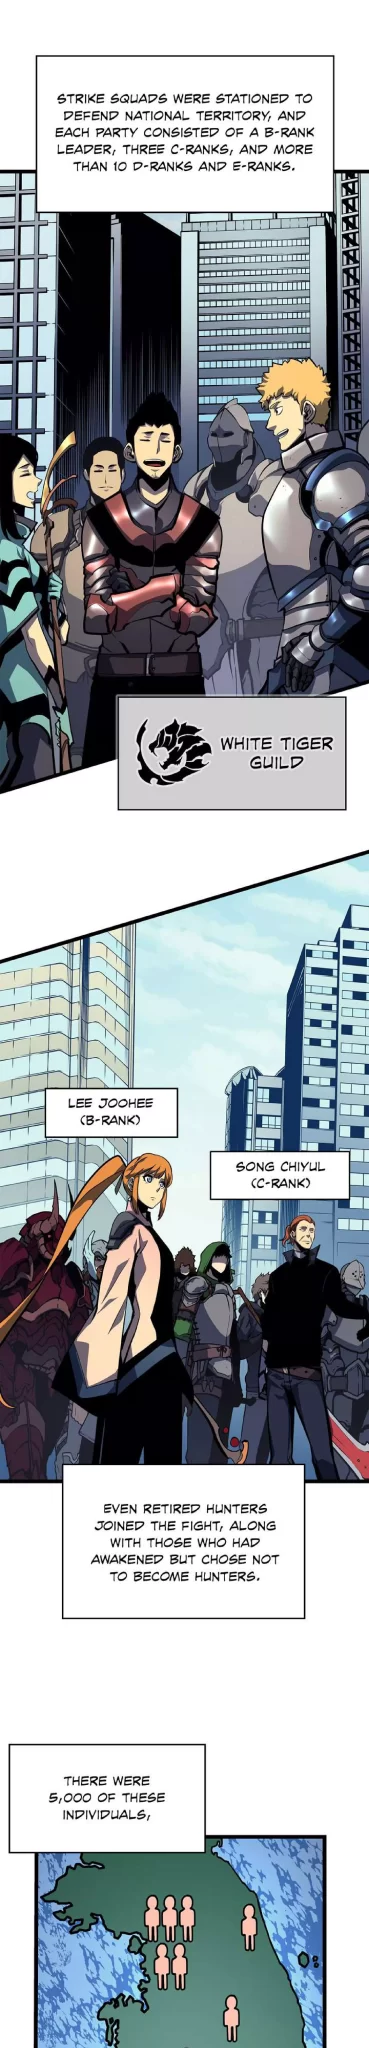 Solo Leveling Manga Manga Chapter - 95 - image 8